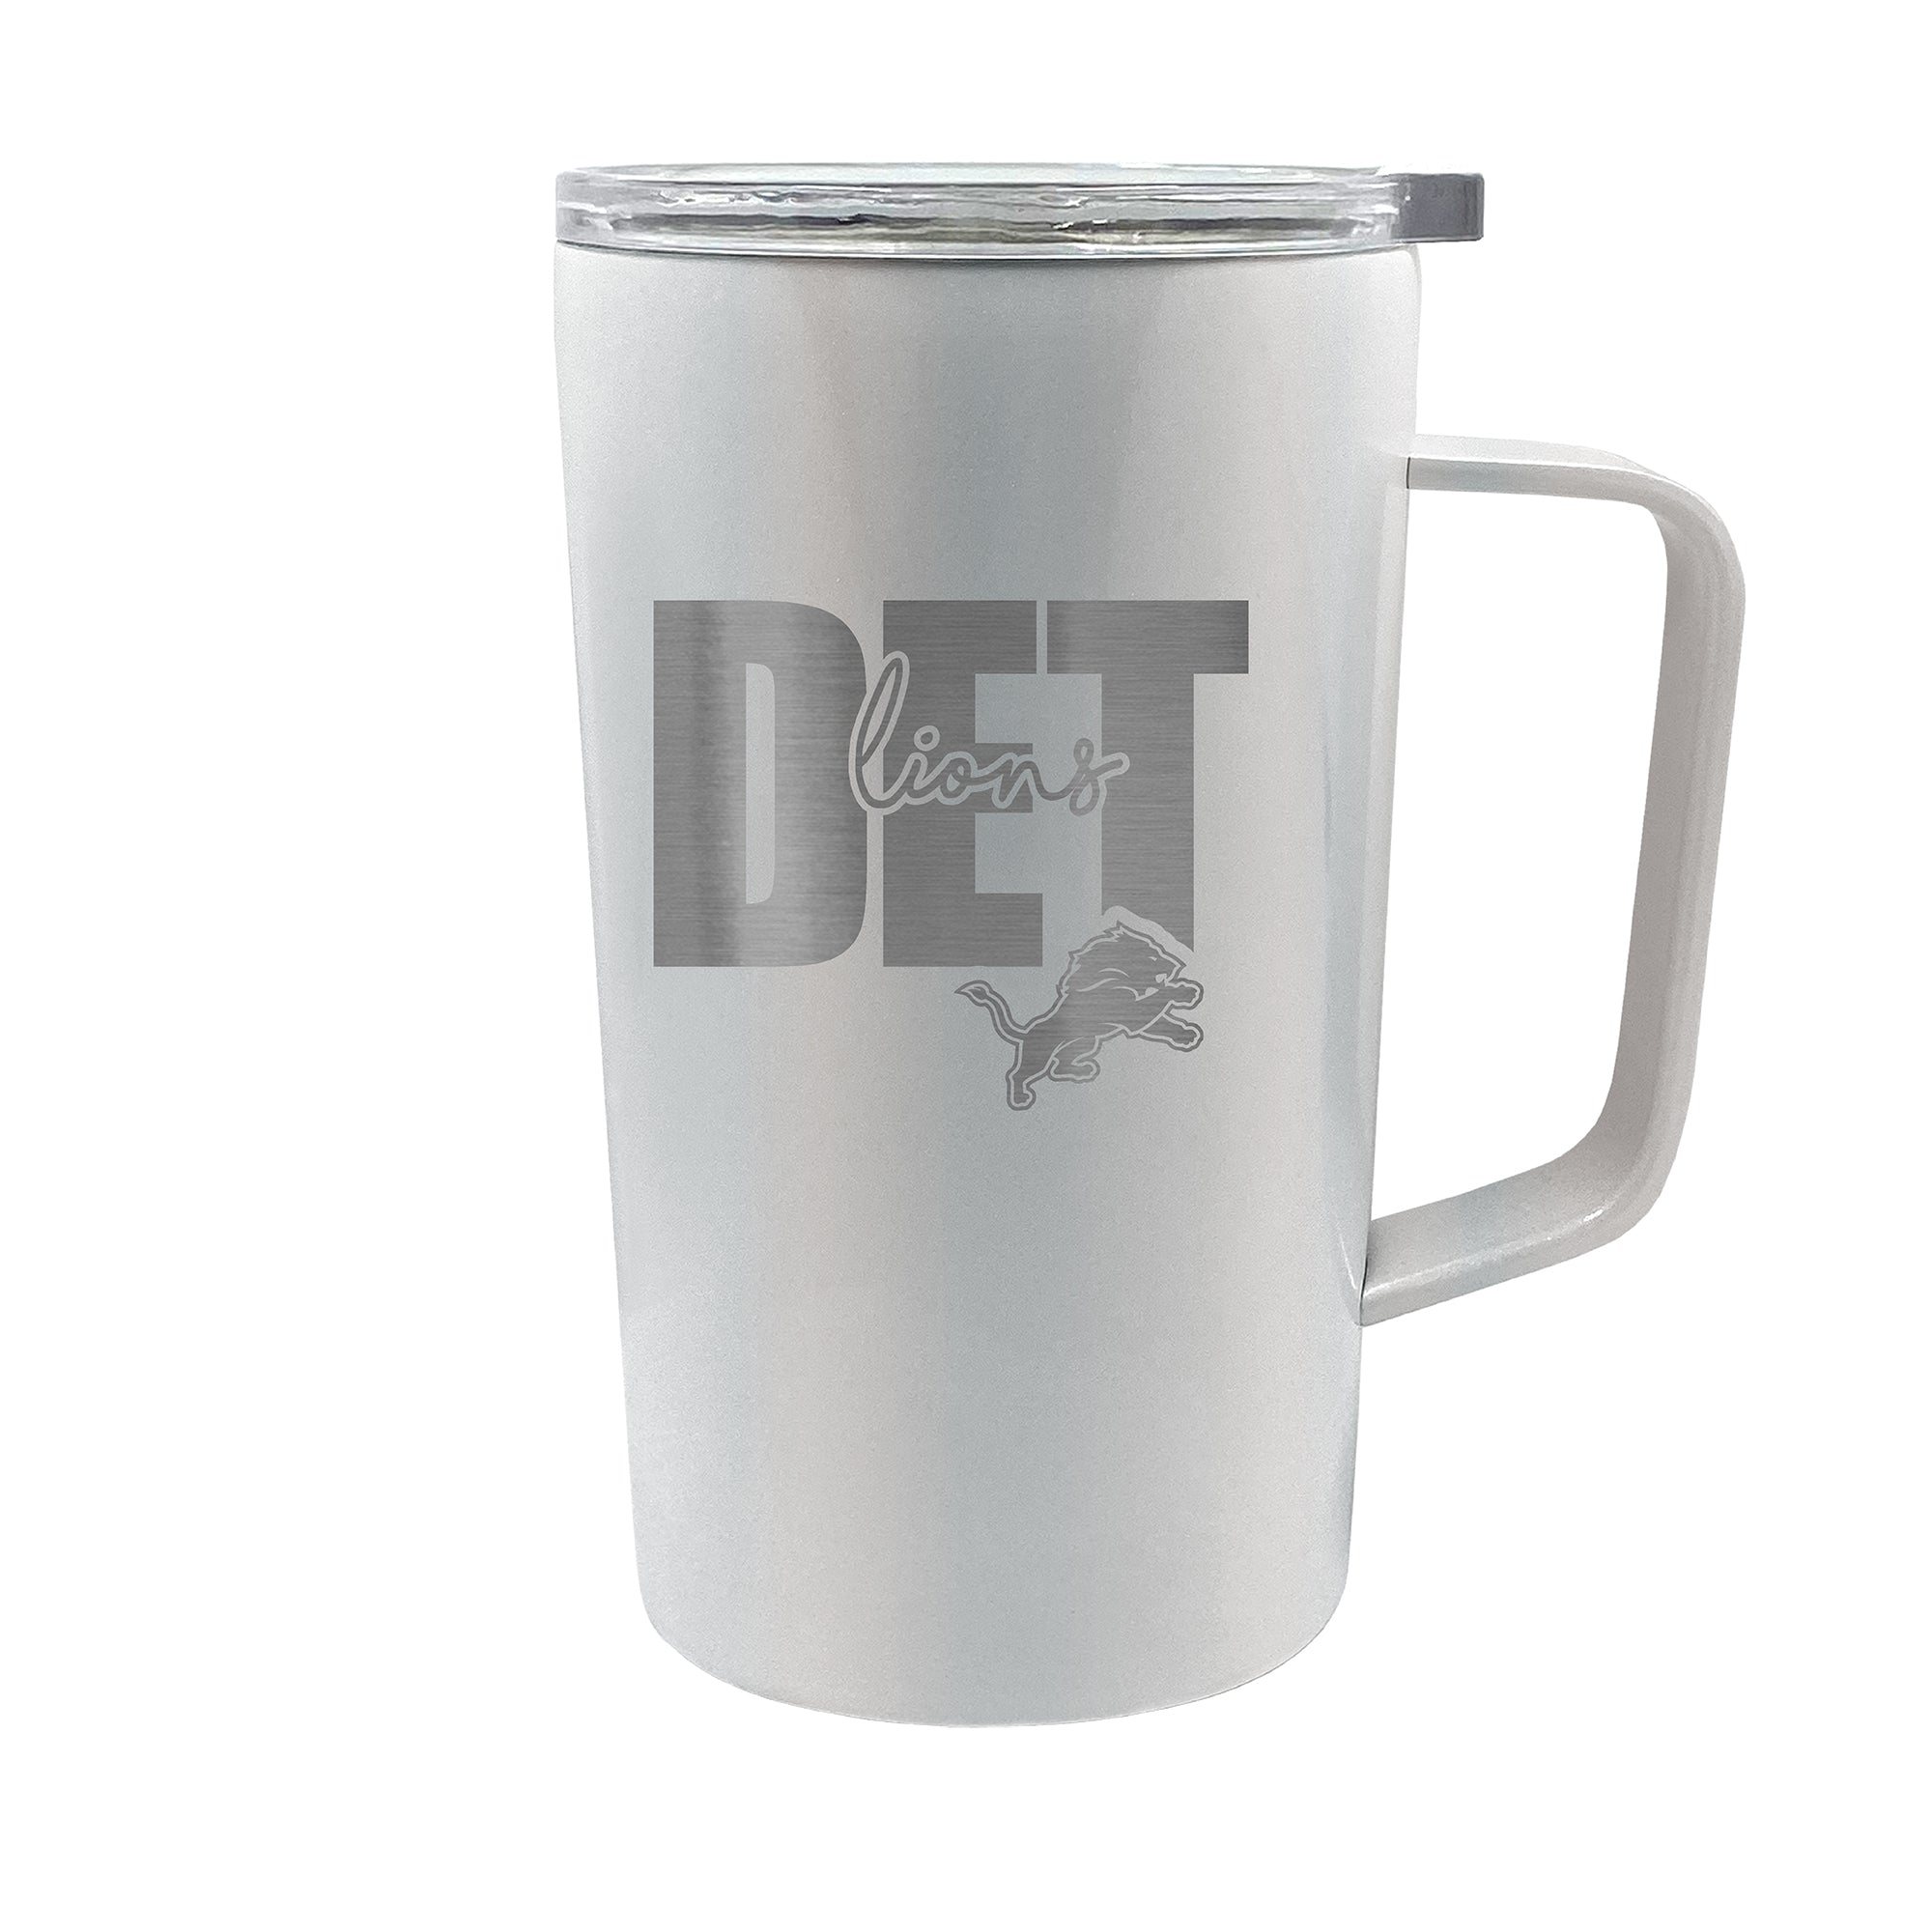 detroit lions cups